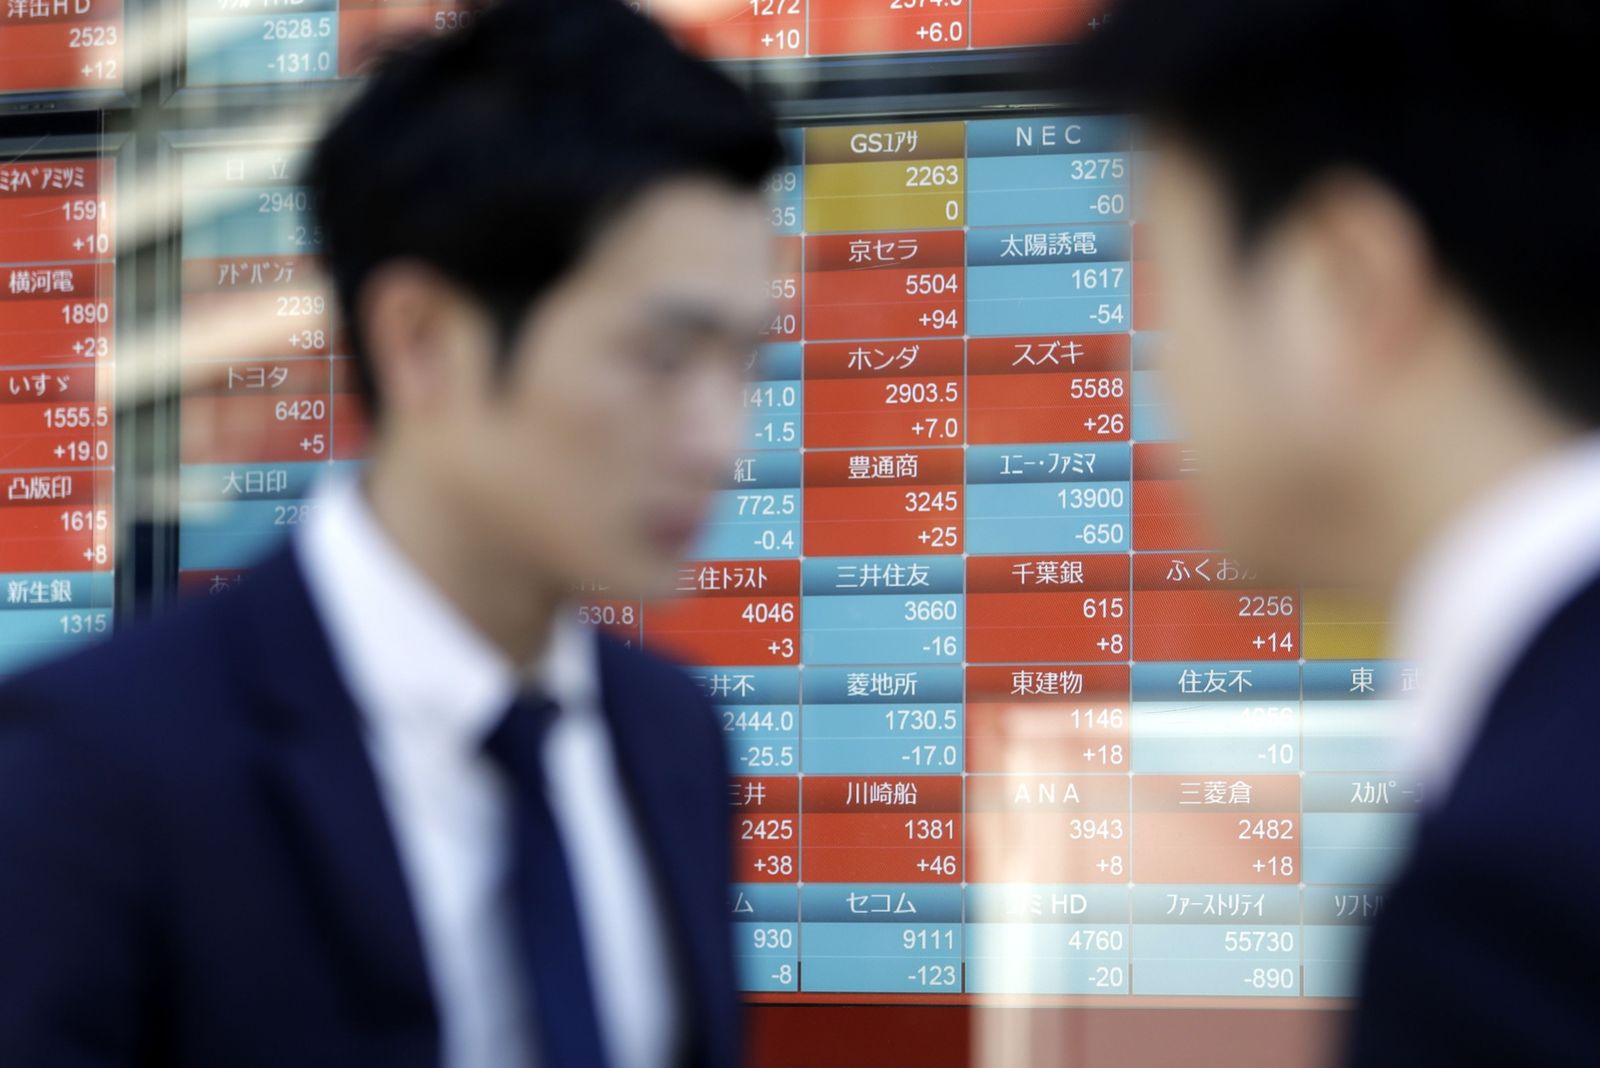 تباين أداء الأسهم الآسيوية وتراجع الين بعد قرار بنك اليابان